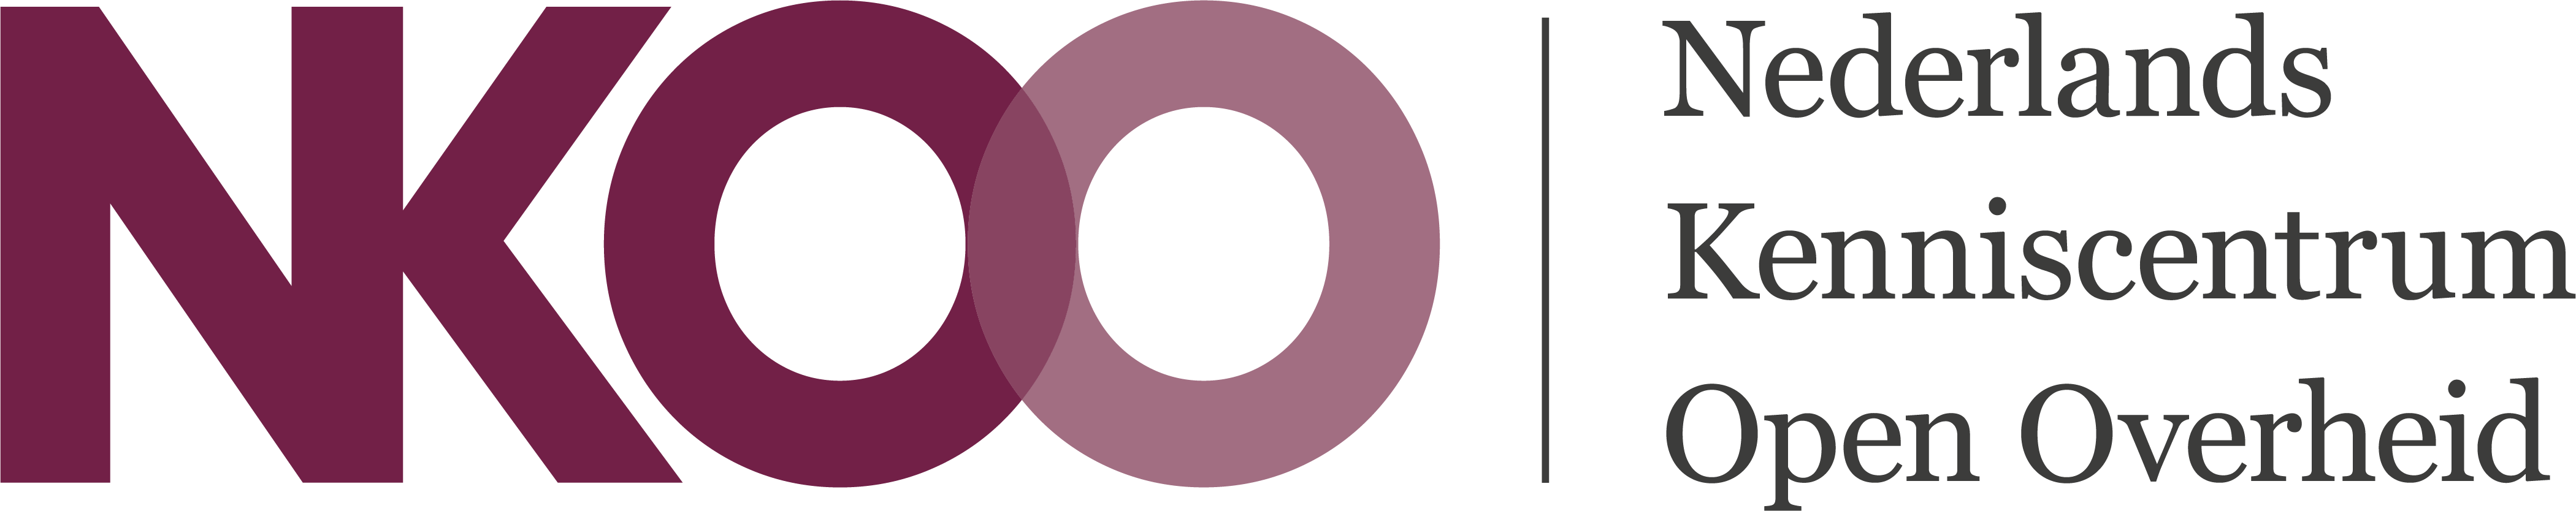 Platform NKOO logo